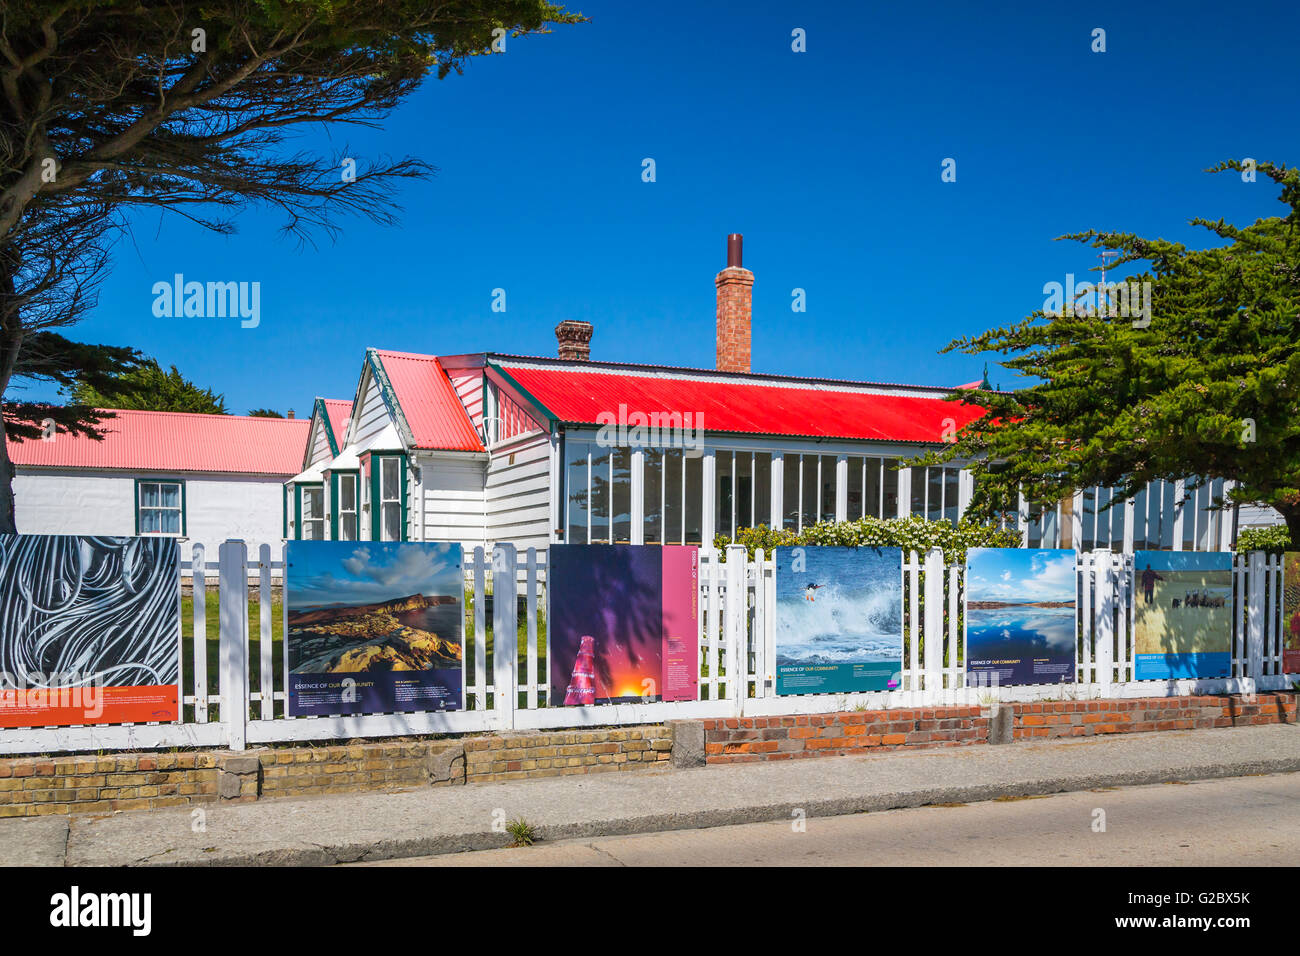 Kunstwerke von lokalen Sehenswürdigkeiten, die auf den Straßen von East Falkland, Stanley, Falkland-Inseln, British Overseas Territory angezeigt. Stockfoto